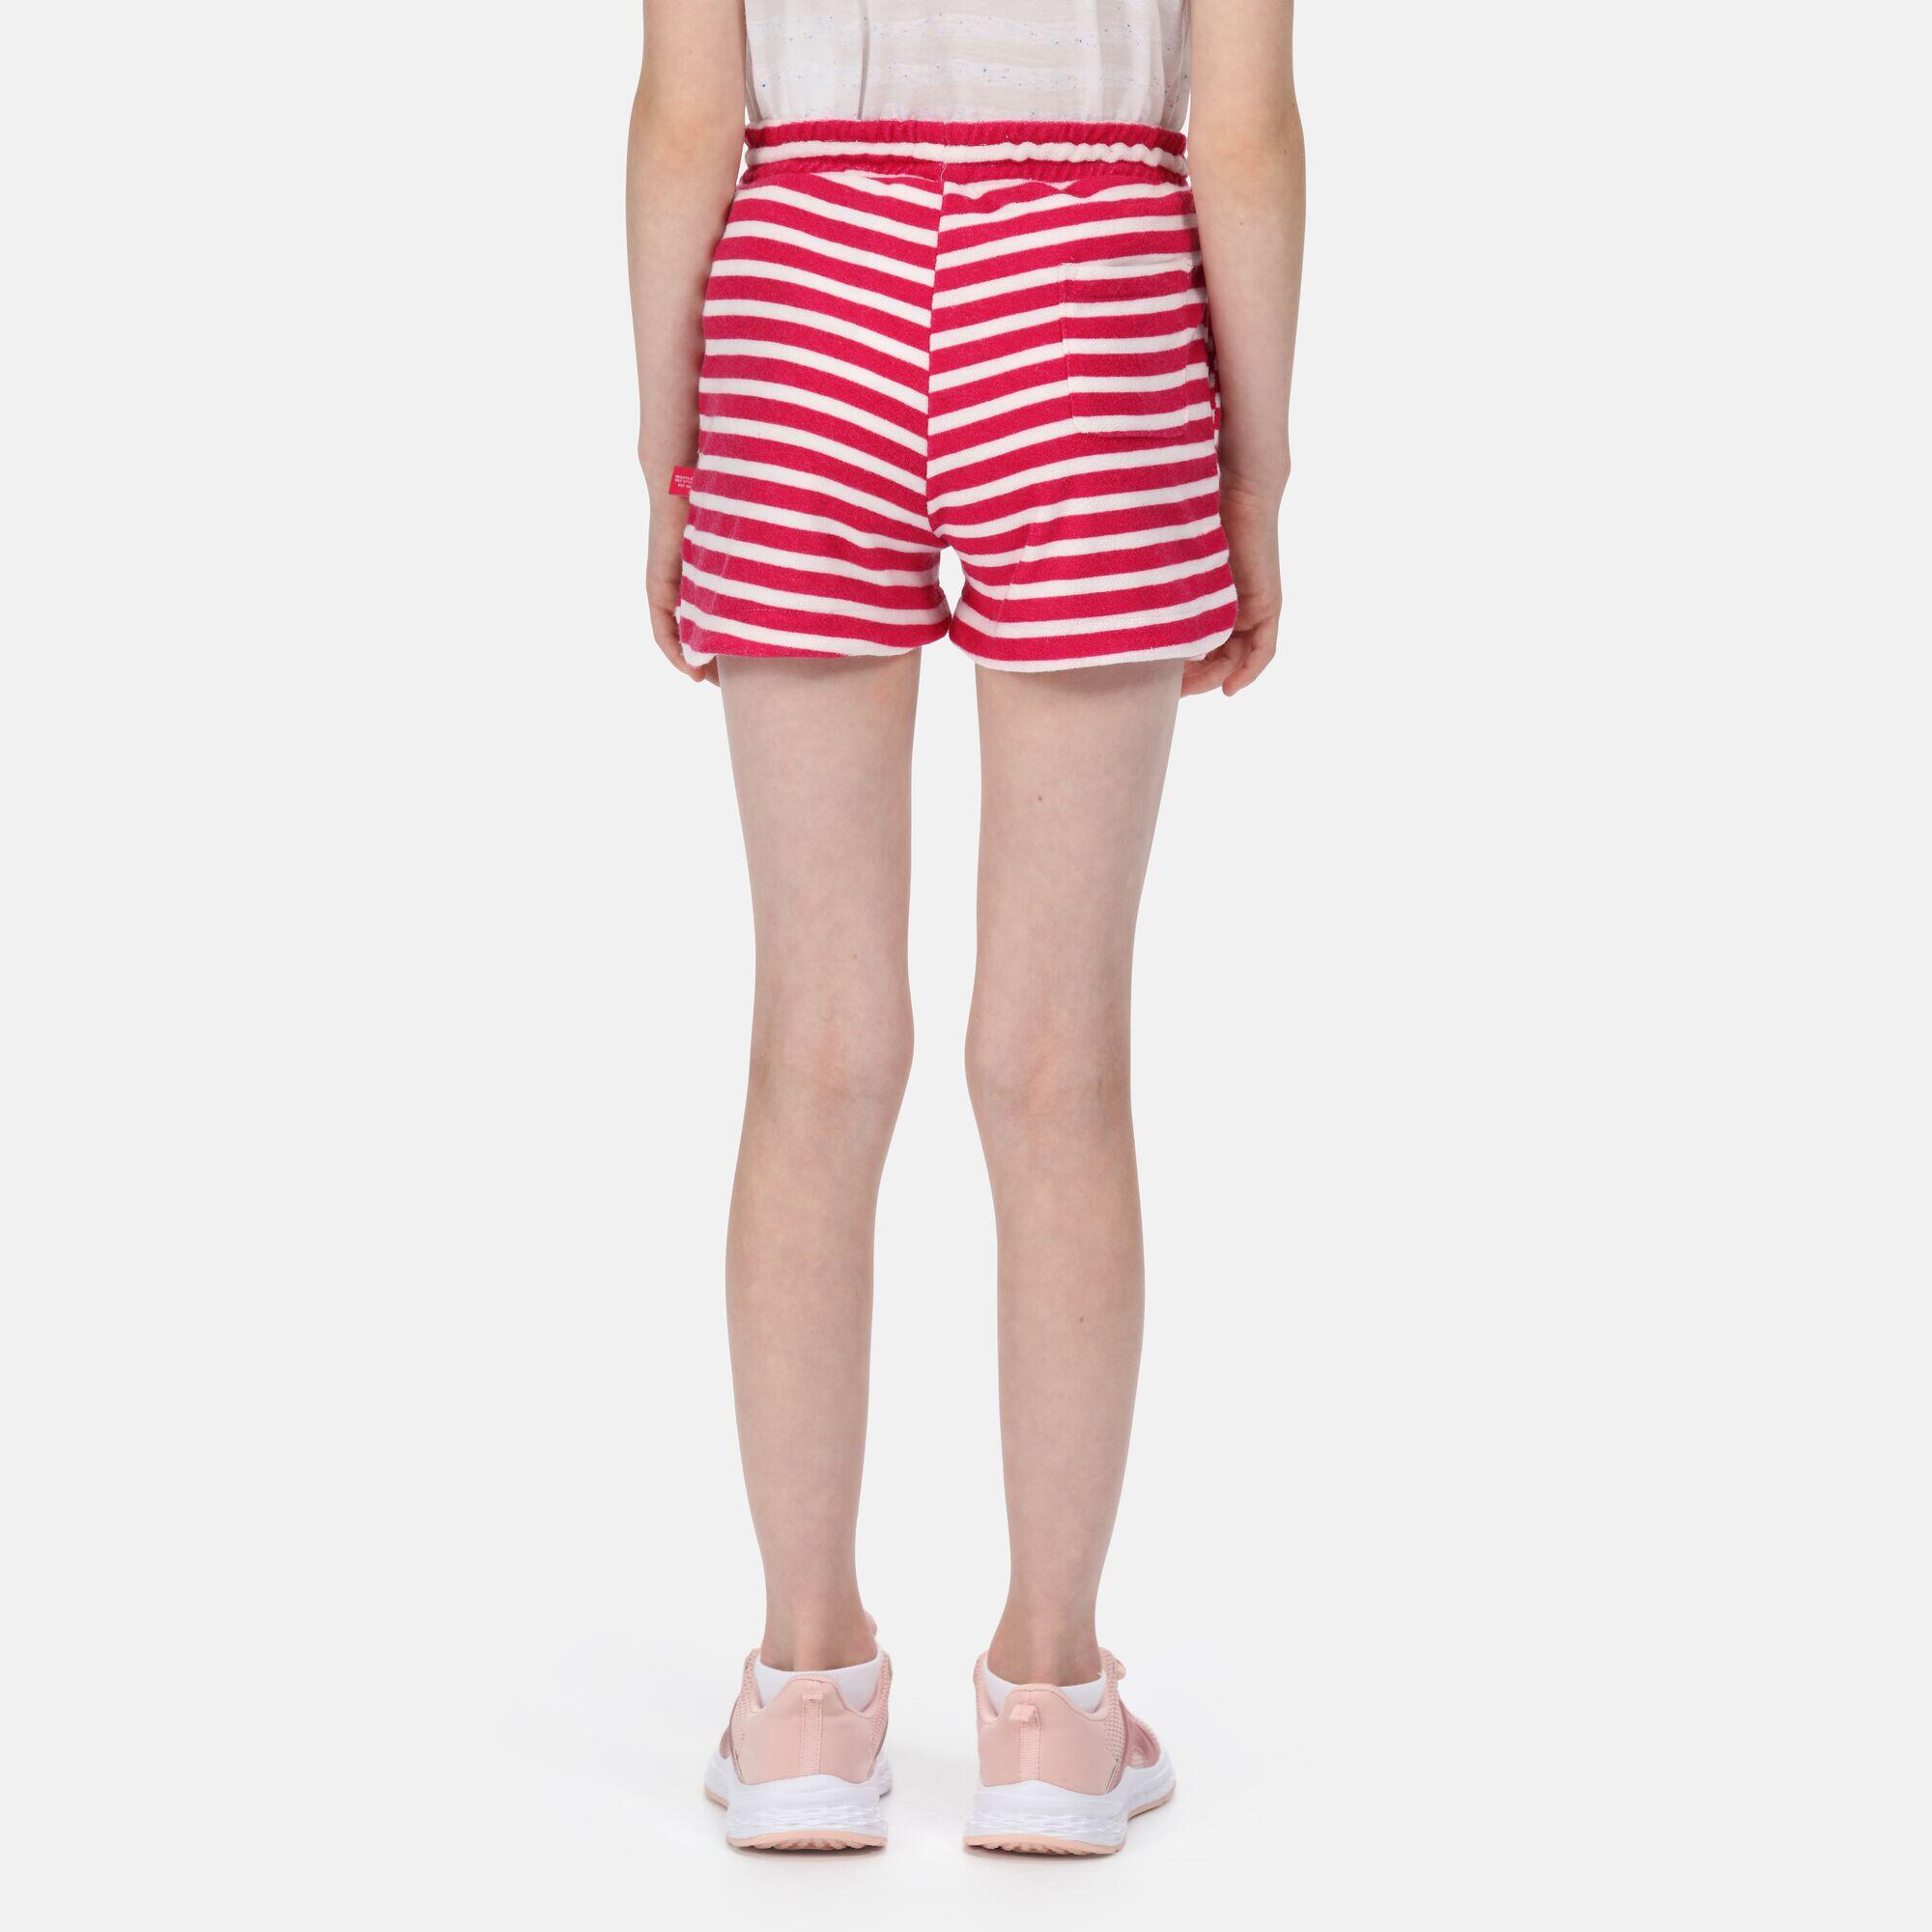 Dayana Kids Walking Shorts - Pink Stripe 2/5